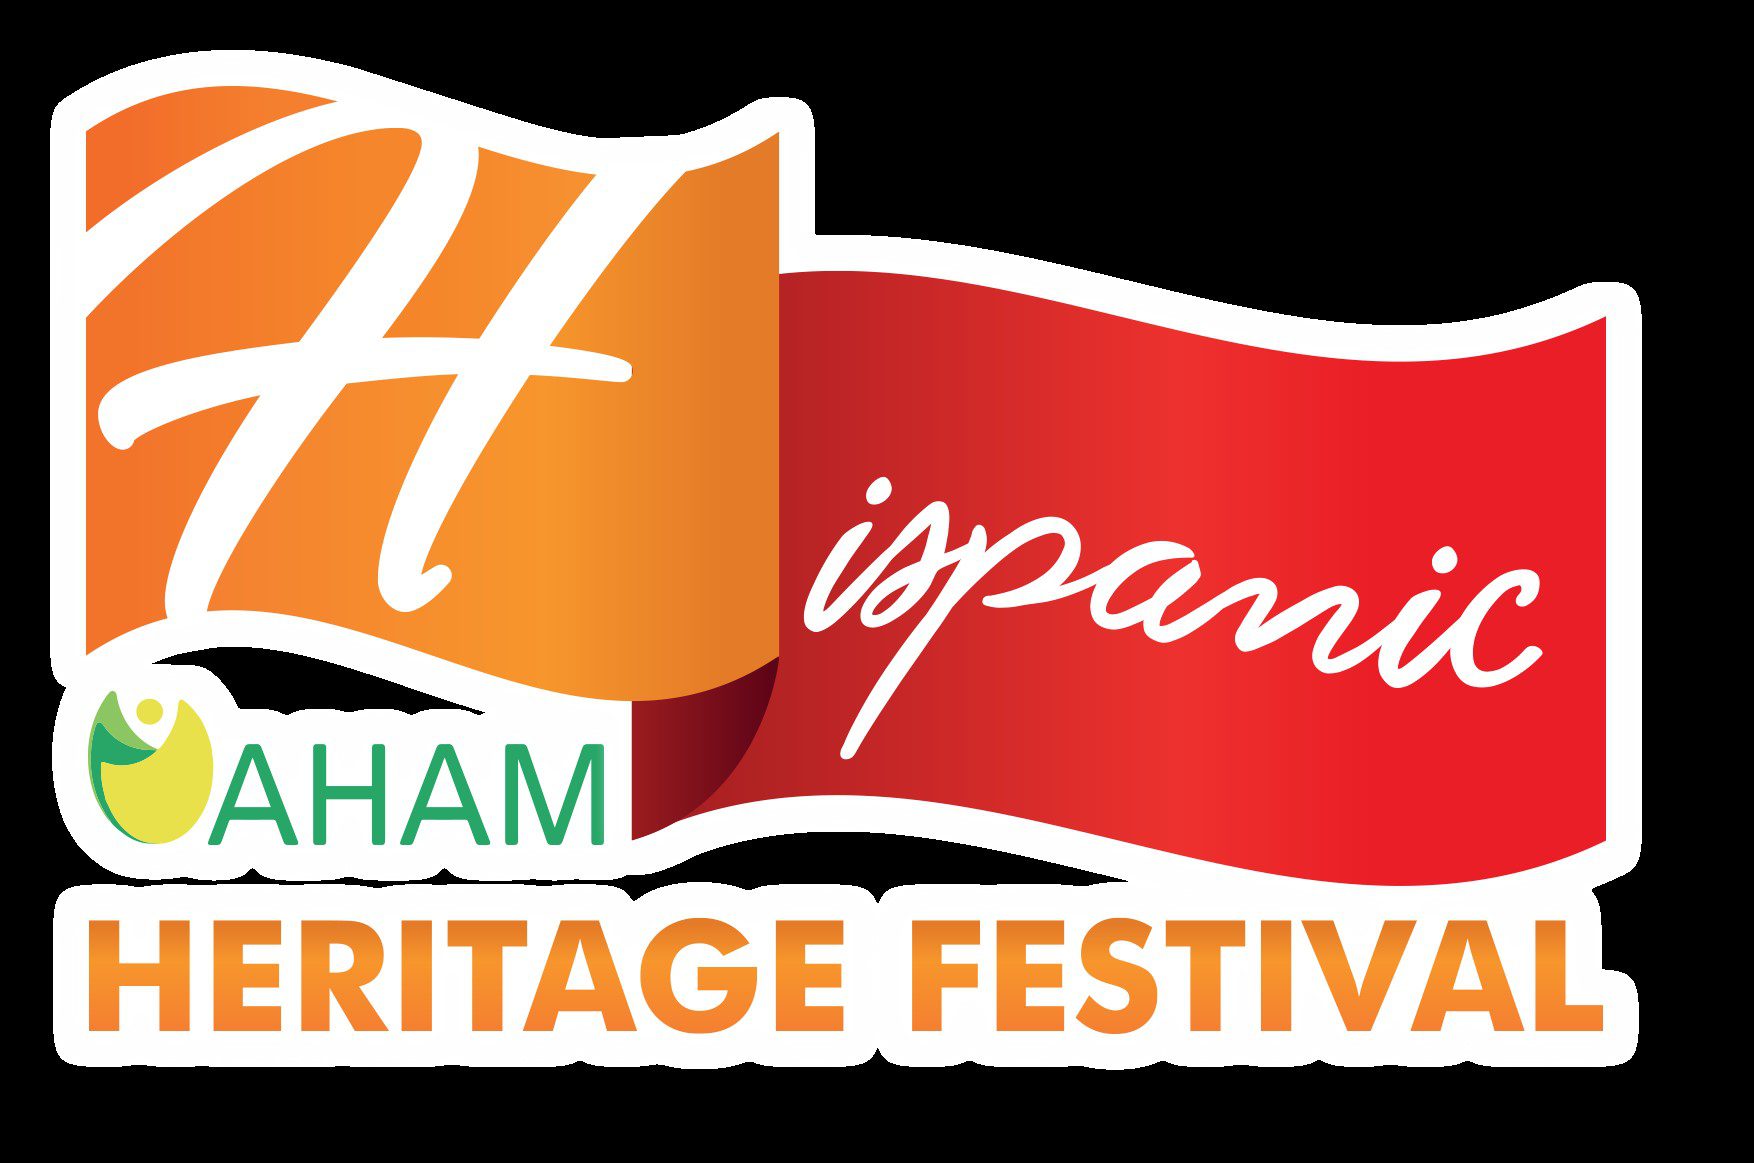 Heritage Festival - HeritageFestival